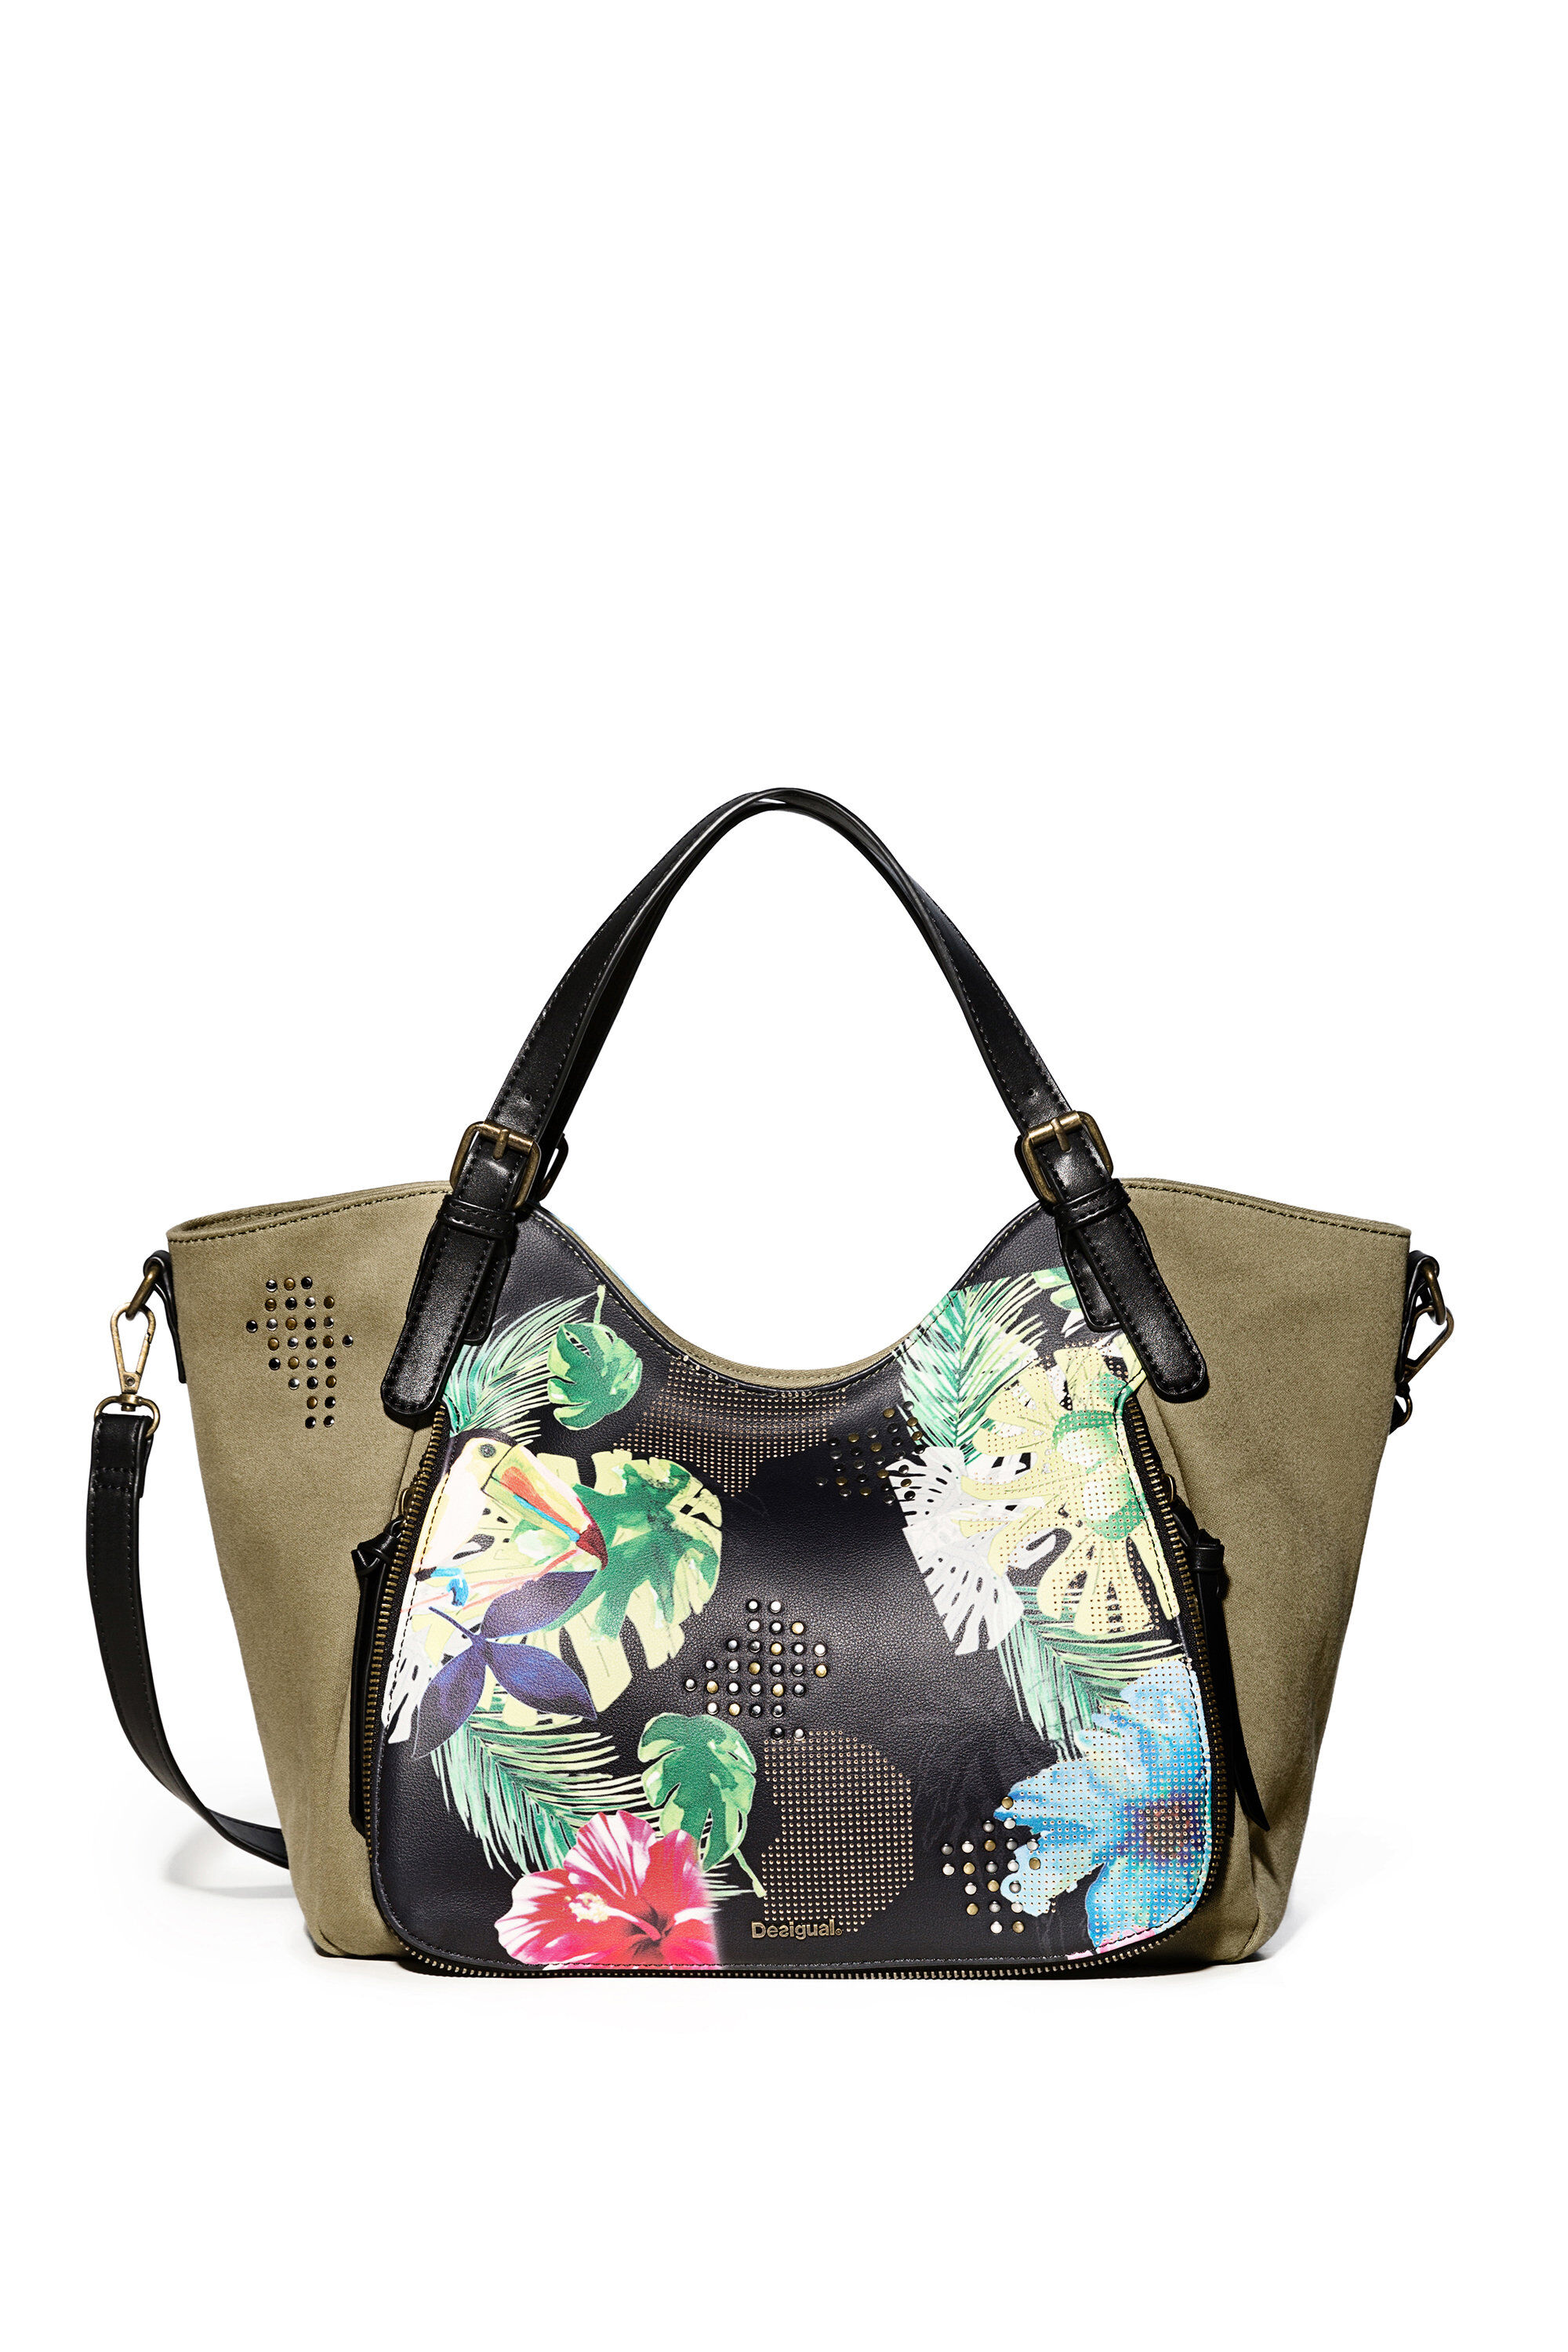 Desigual Lilac Rotterdam Shoulder Bag Umhängetasche Handtasche Tasche 